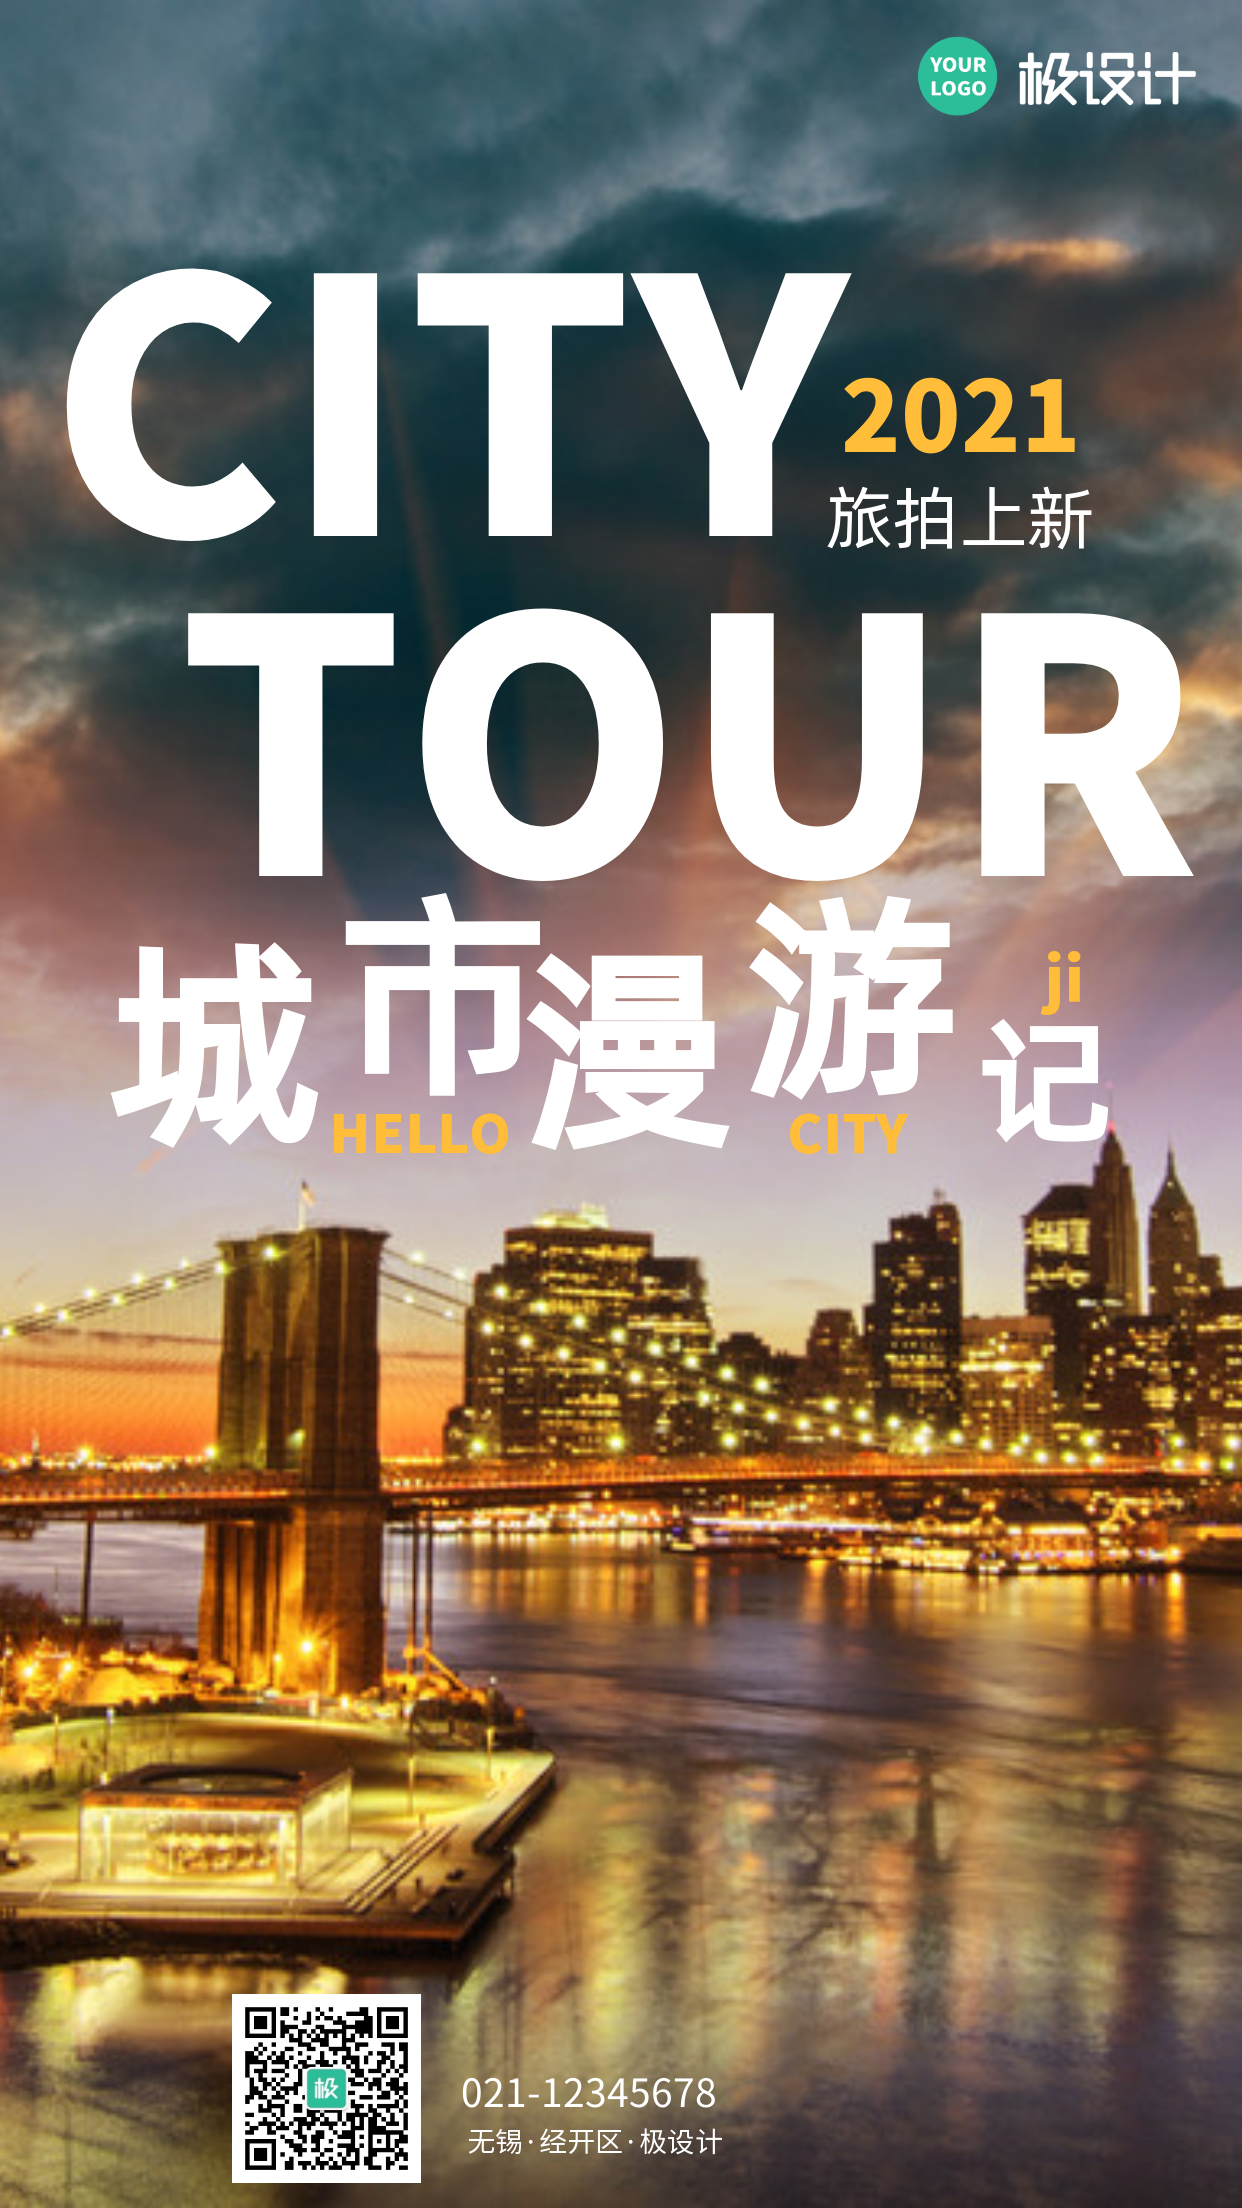 城市旅拍画报上新手机摄影图海报